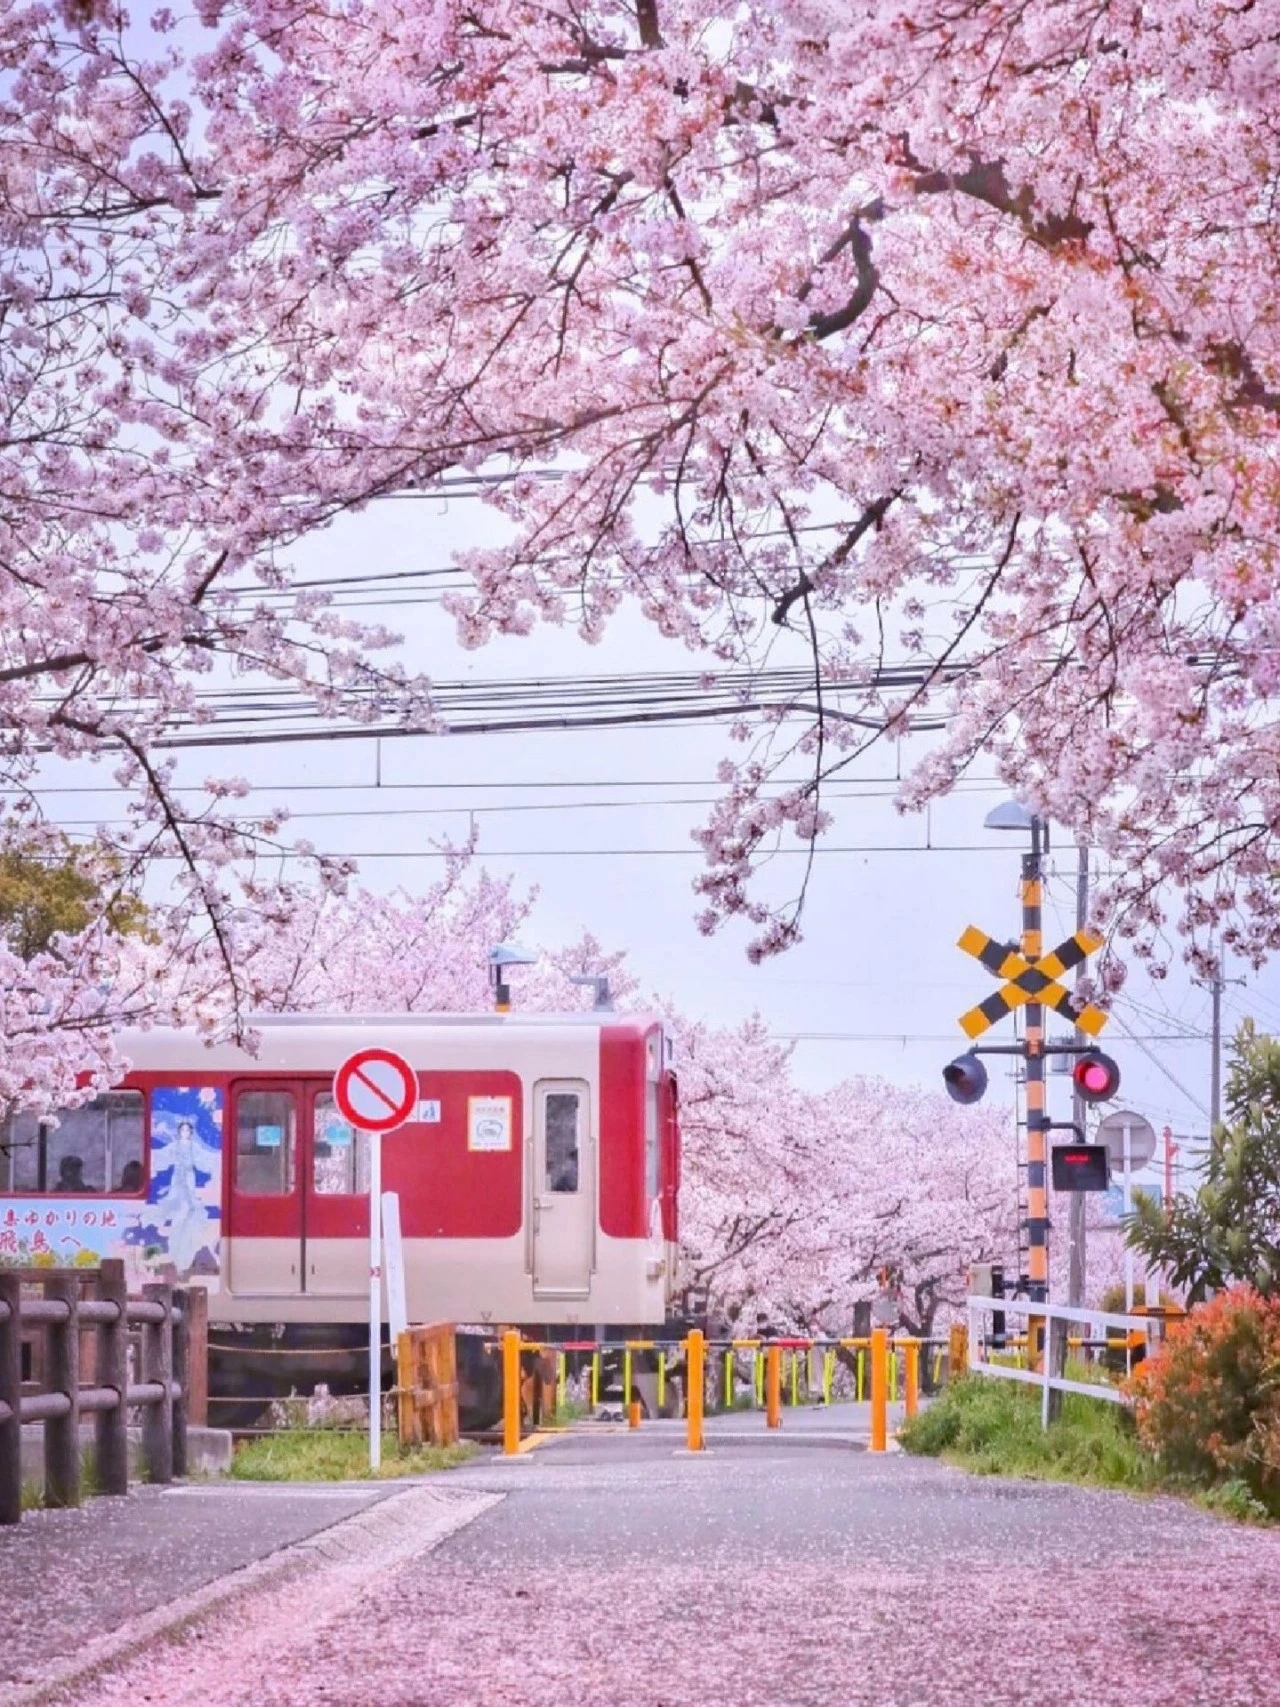 赏樱去处:日本樱花绽放时间预计